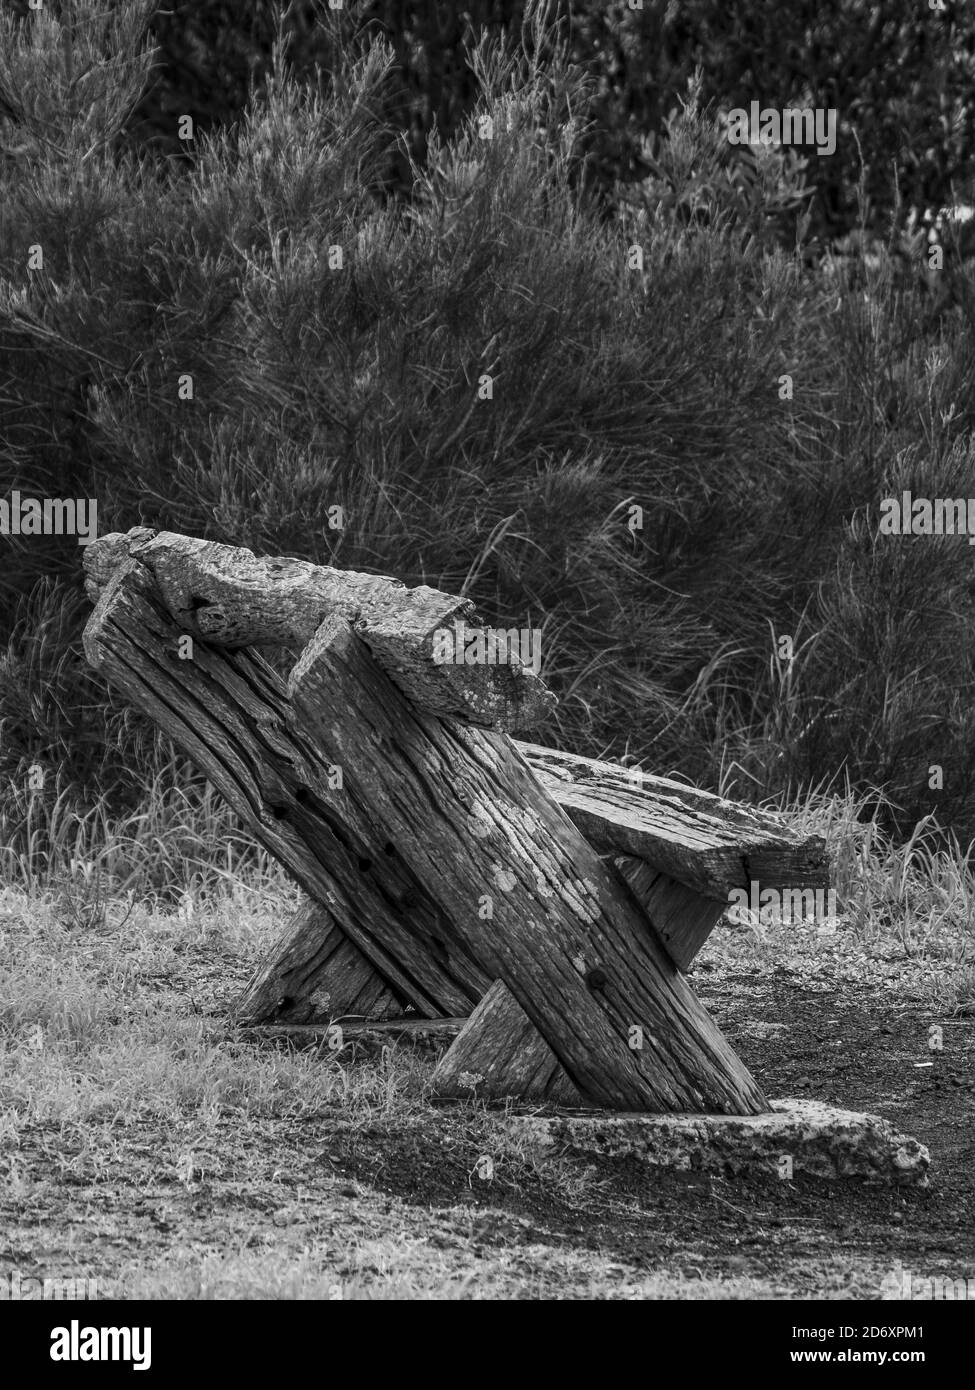 Primo piano immagine in bianco e nero di una panca nel mezzo di una foresta Foto Stock